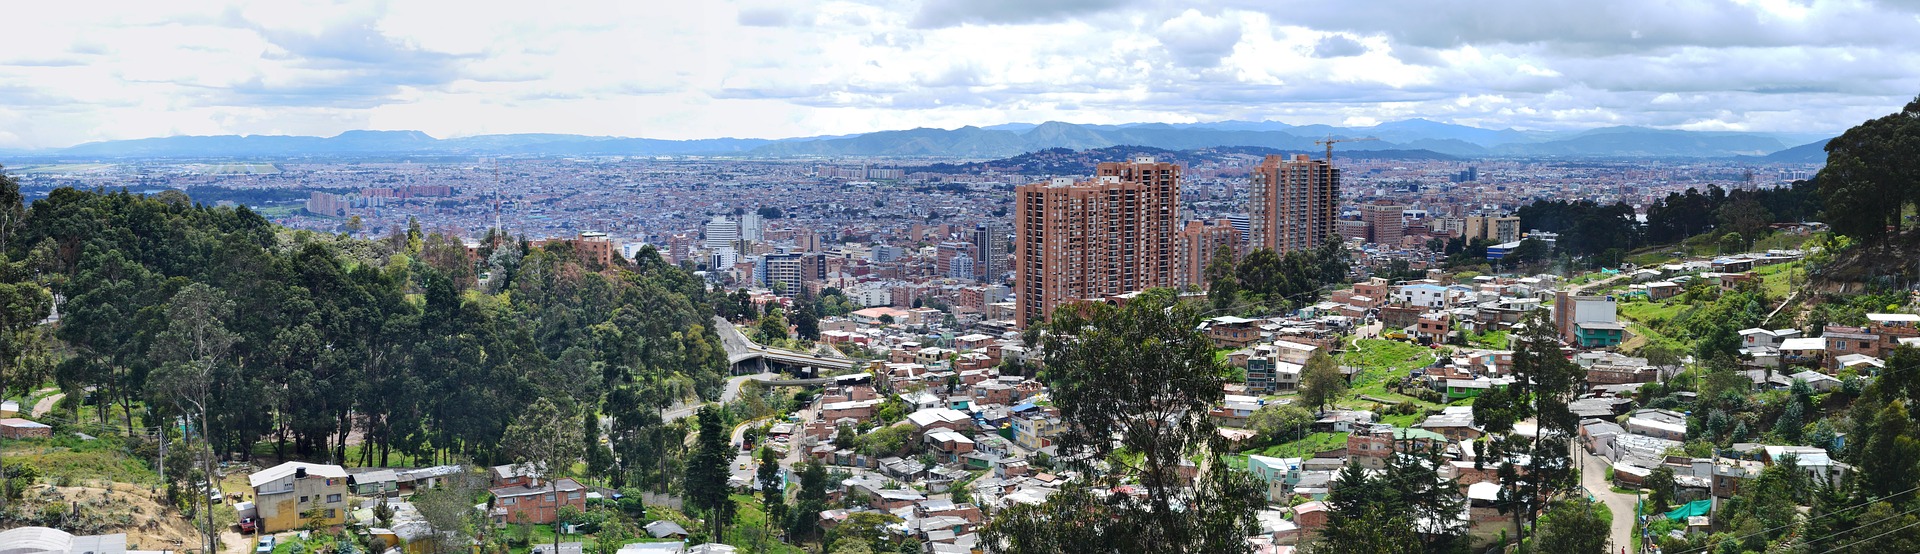 Für 479,00€ nach Kolumbien Städtereise nach Bogota in Südamerika